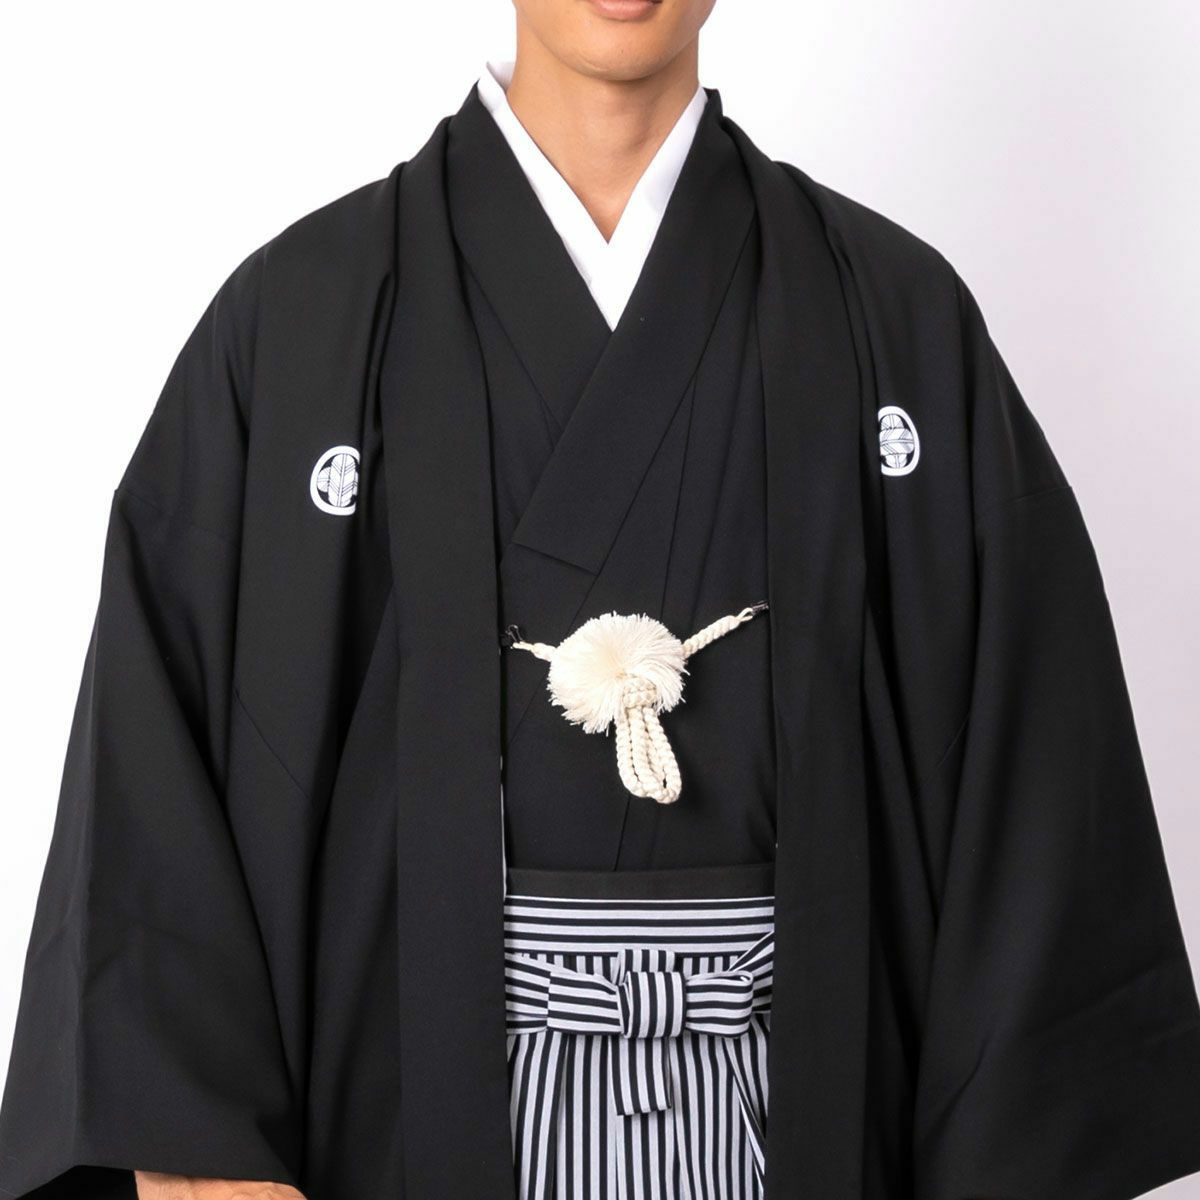 黒紋付羽織袴